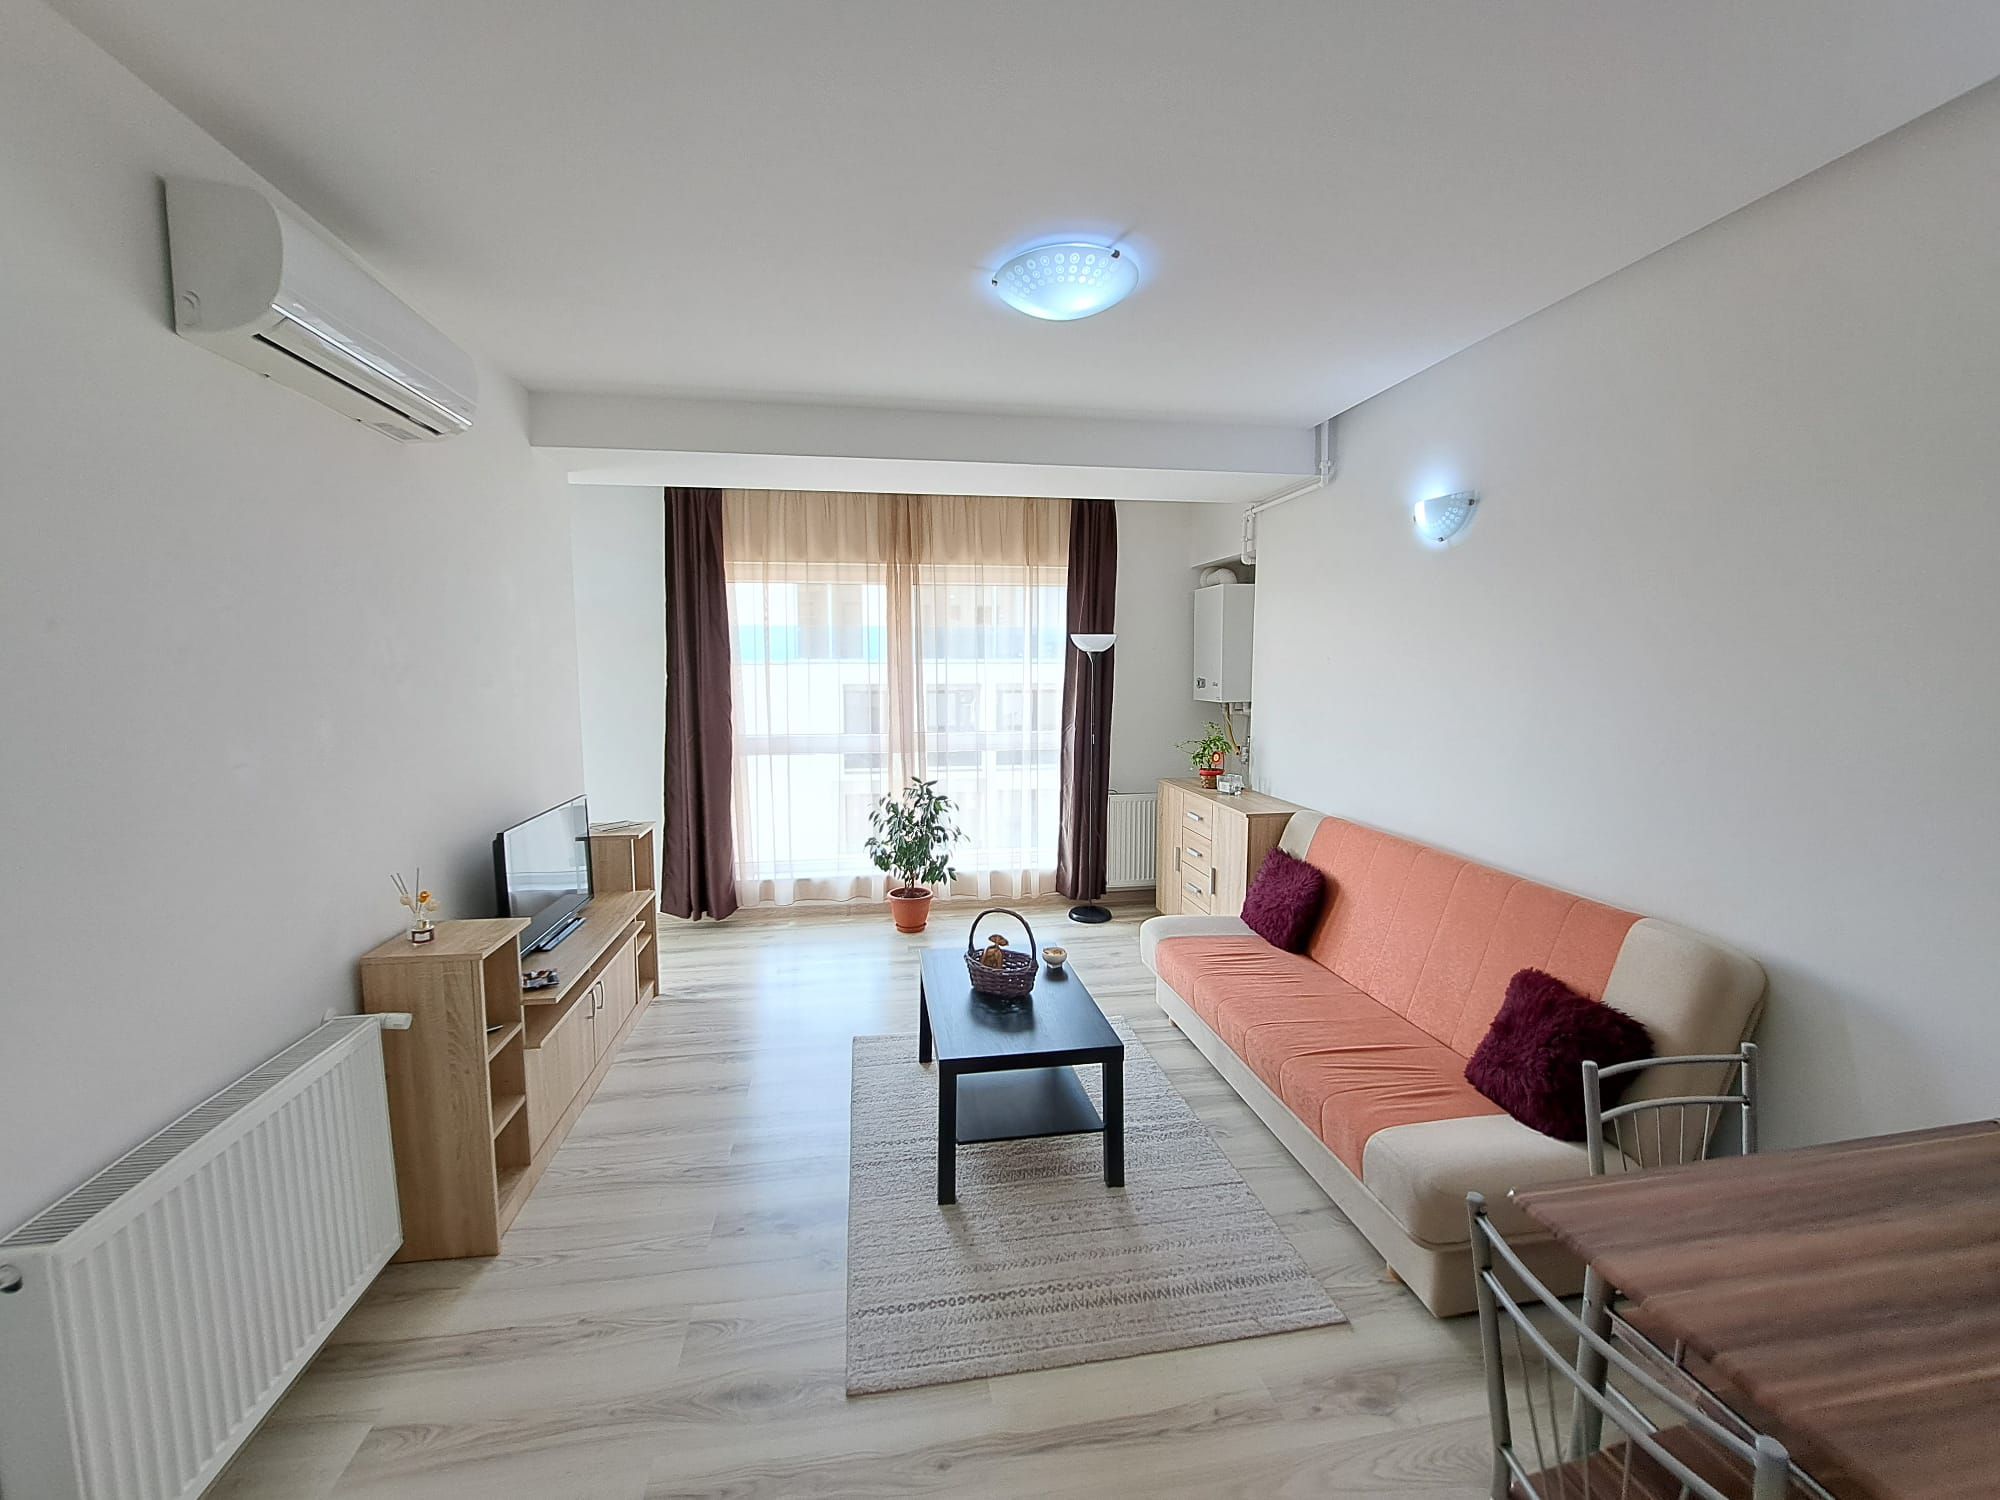 Apartament cu 2 camere 42,63 mp - Floreasca Residence